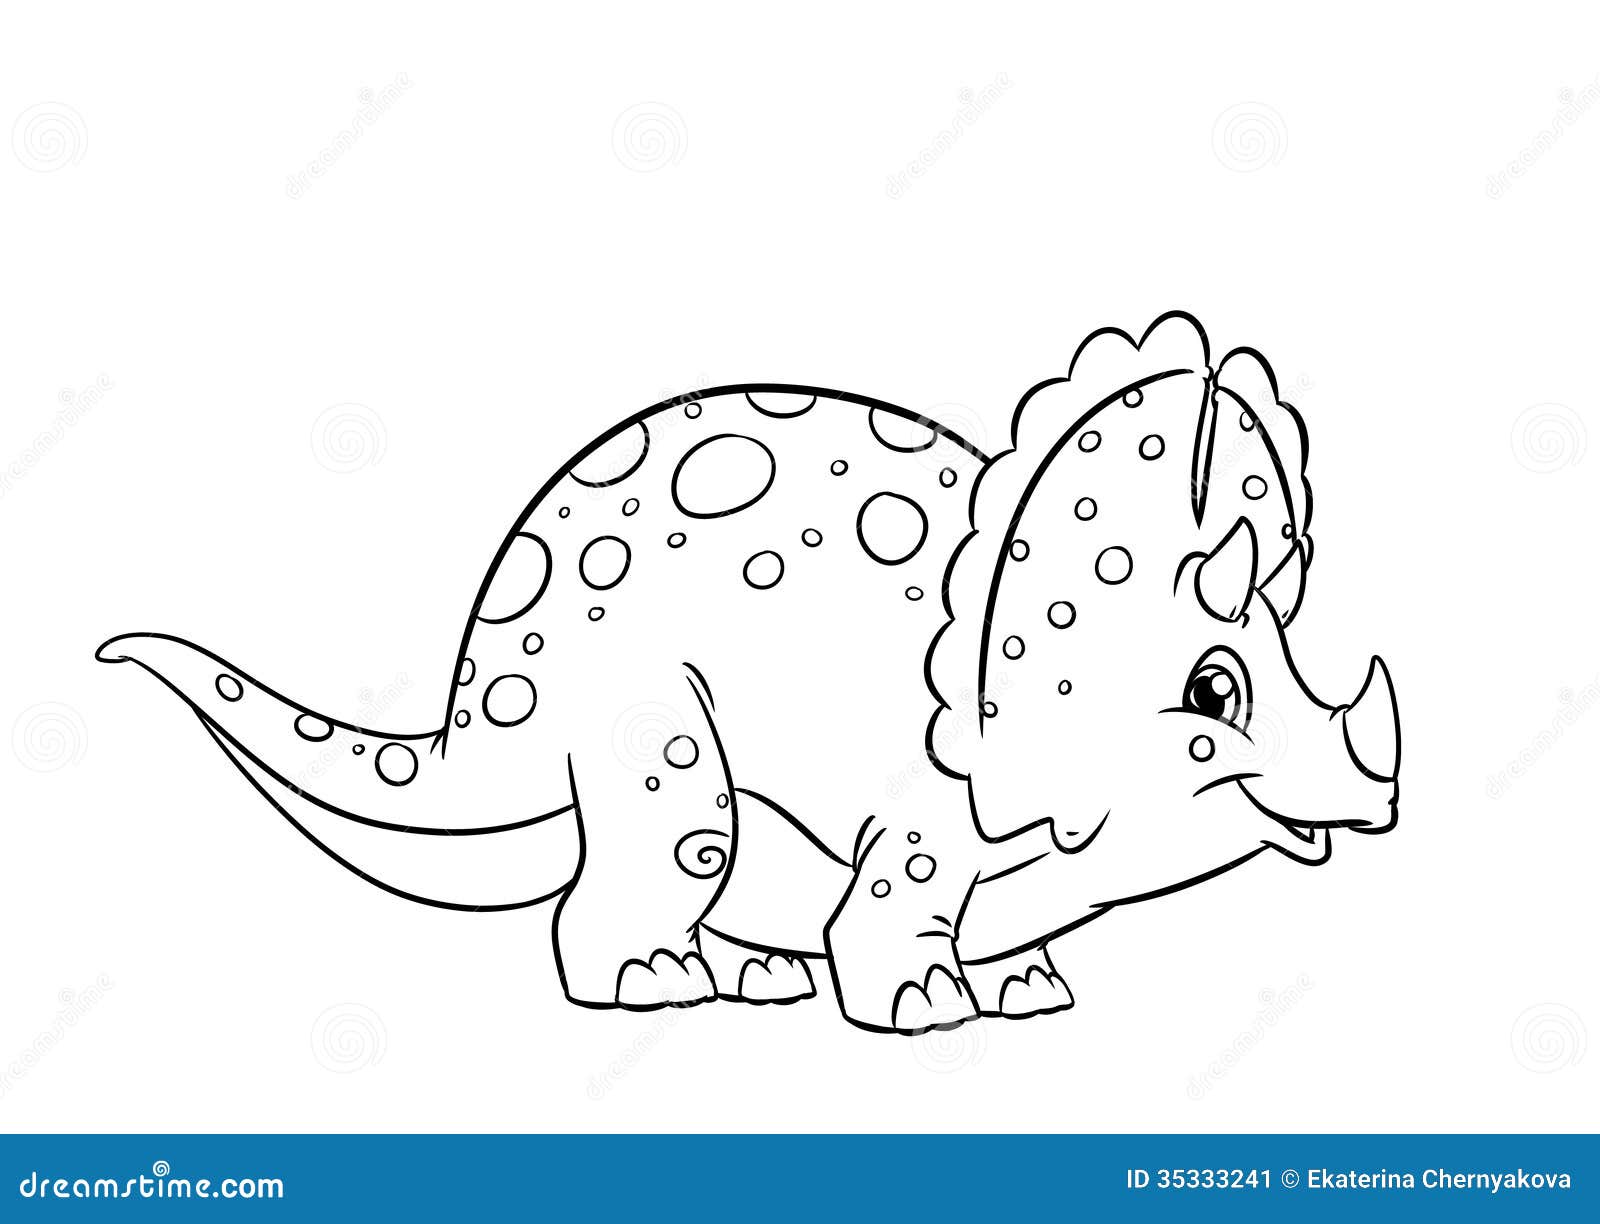 Раскраски динозавры Трицератопс милые